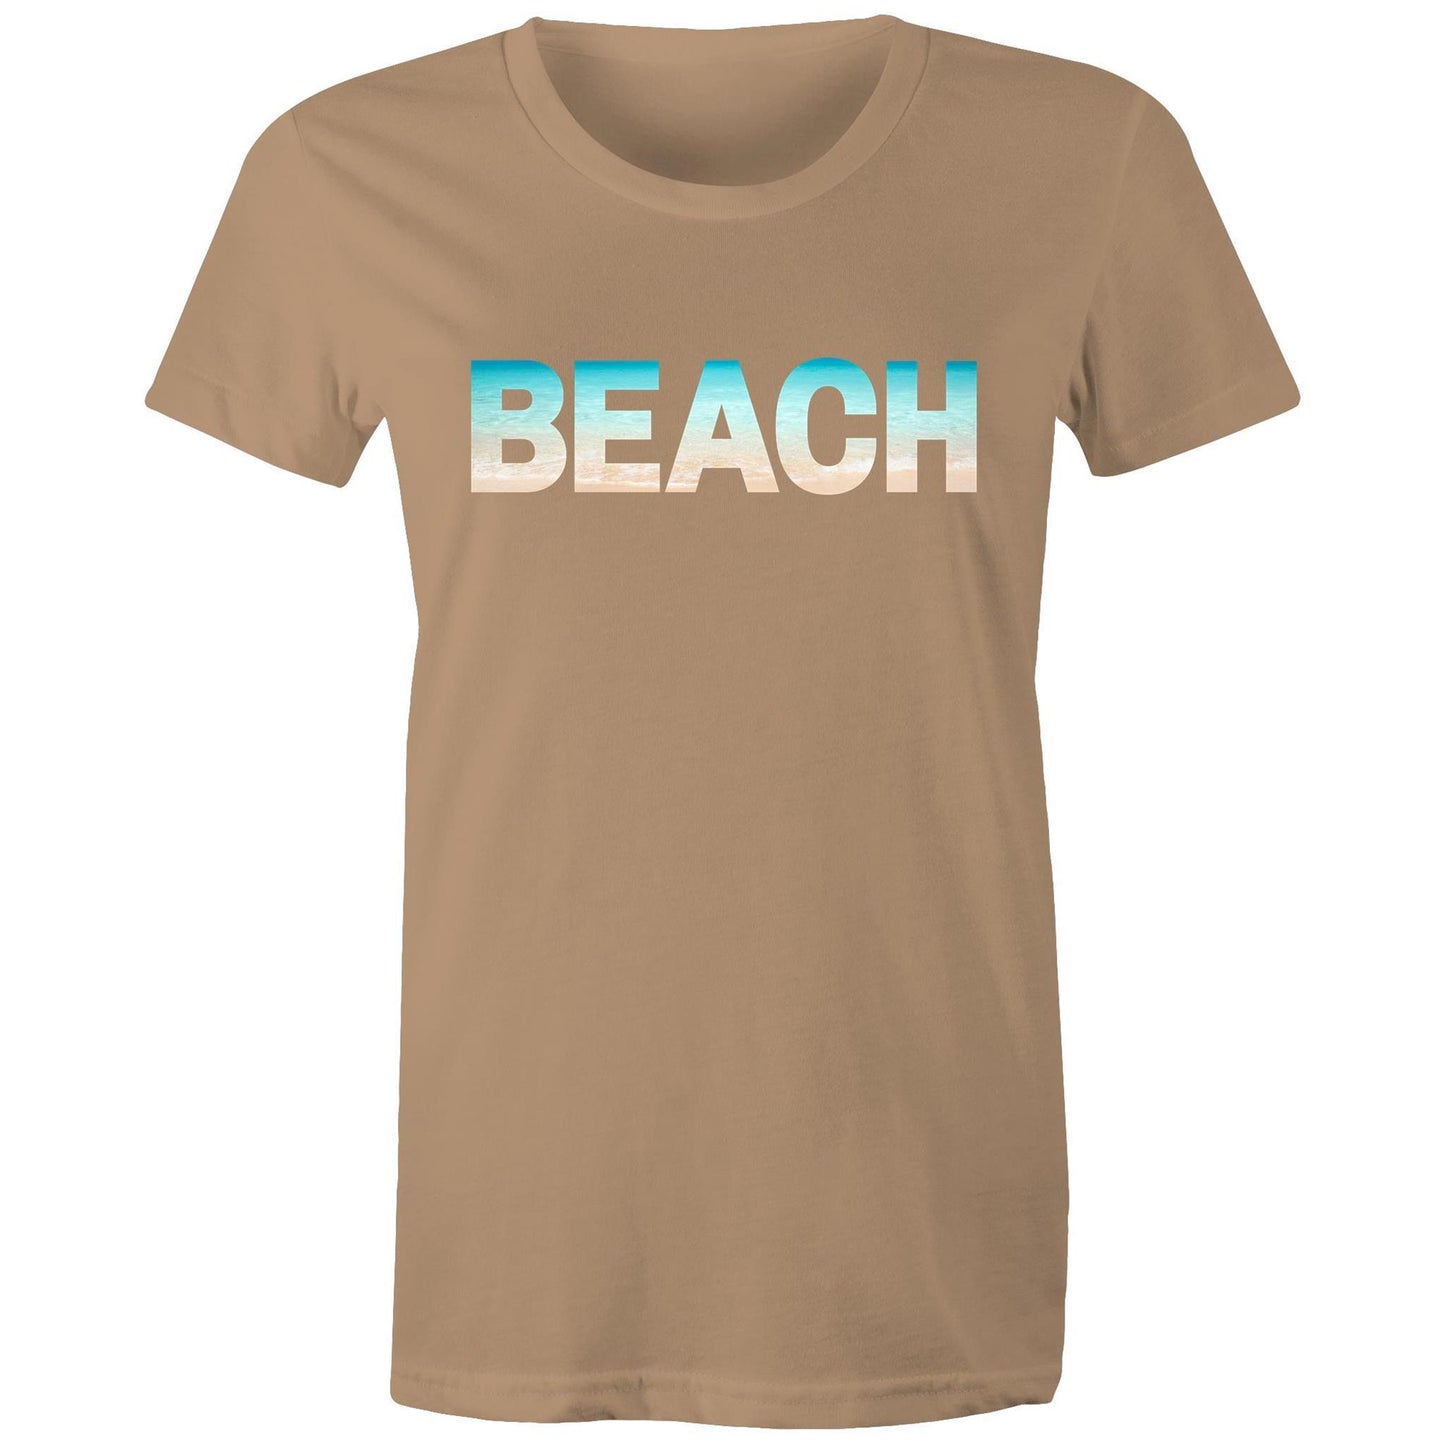 Beach - Women's T-shirt Tan Womens T-shirt Summer Womens